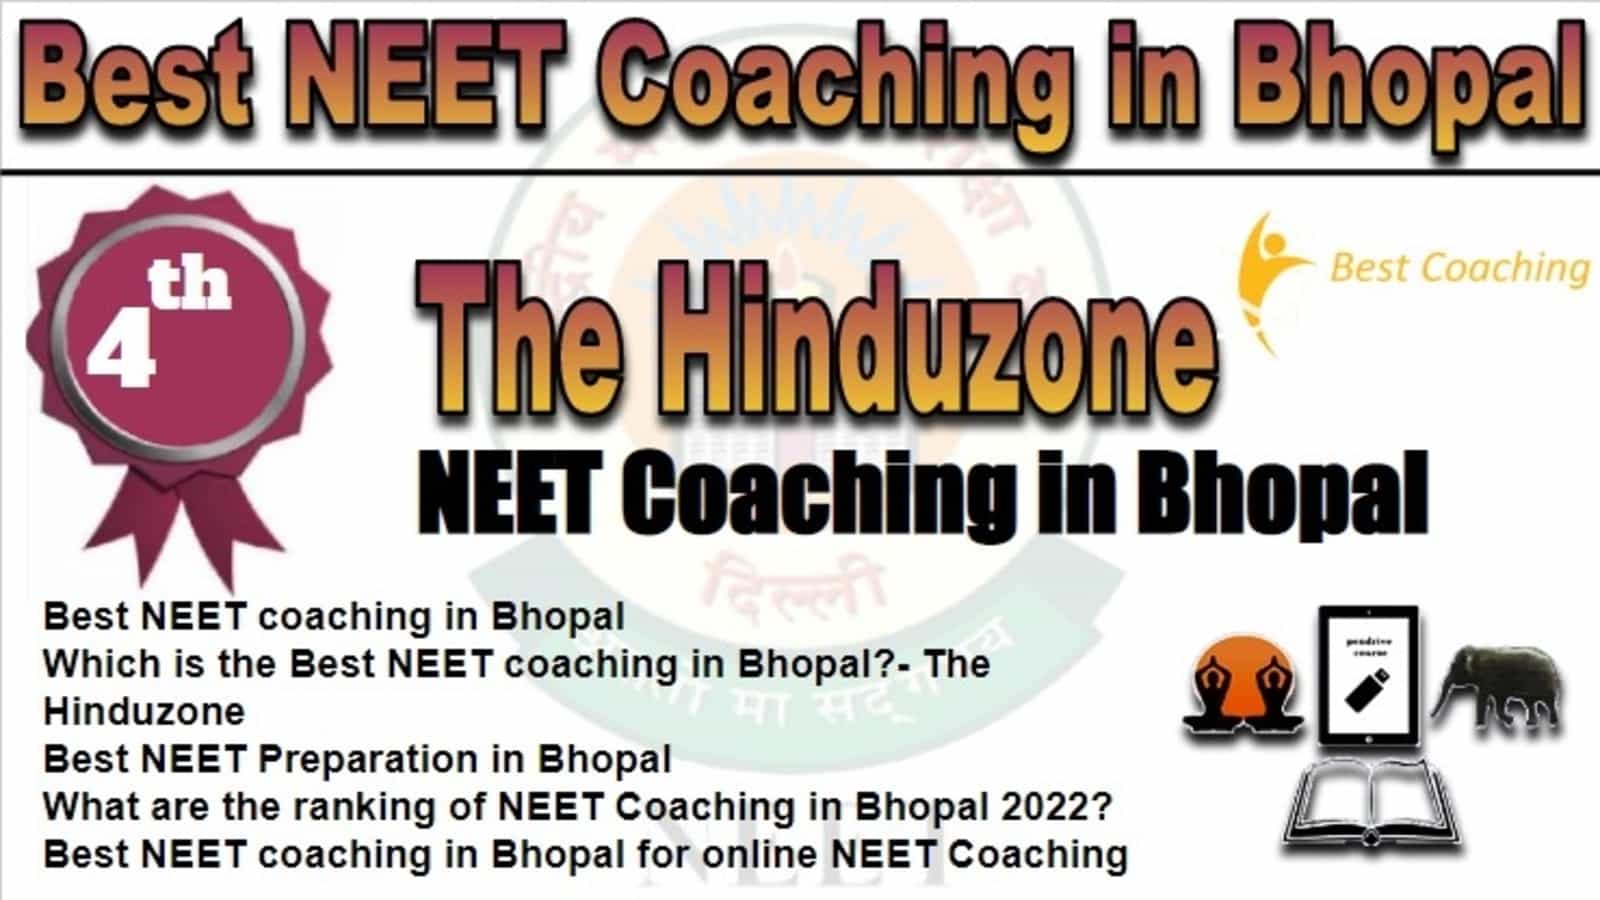 Rank 4 Best NEET Coaching in Bhopal